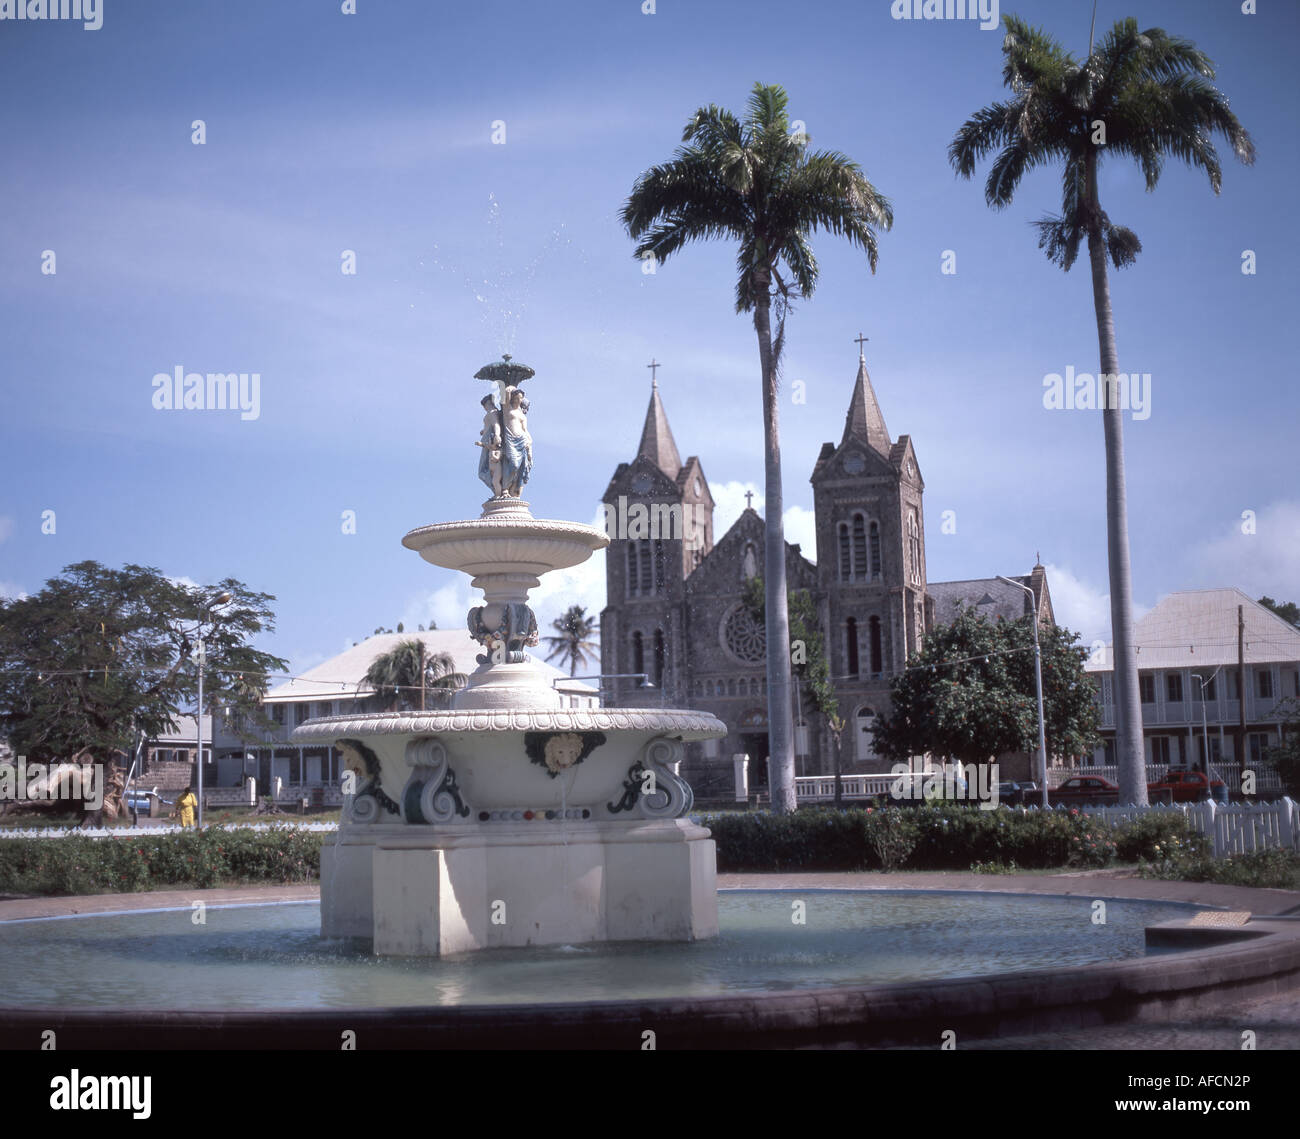 Cathédrale et fontaine de la conception immaculée, place de l'indépendance, Basseterre, Saint-kitts-et-Nevis, Petites Antilles, Caraïbes Banque D'Images